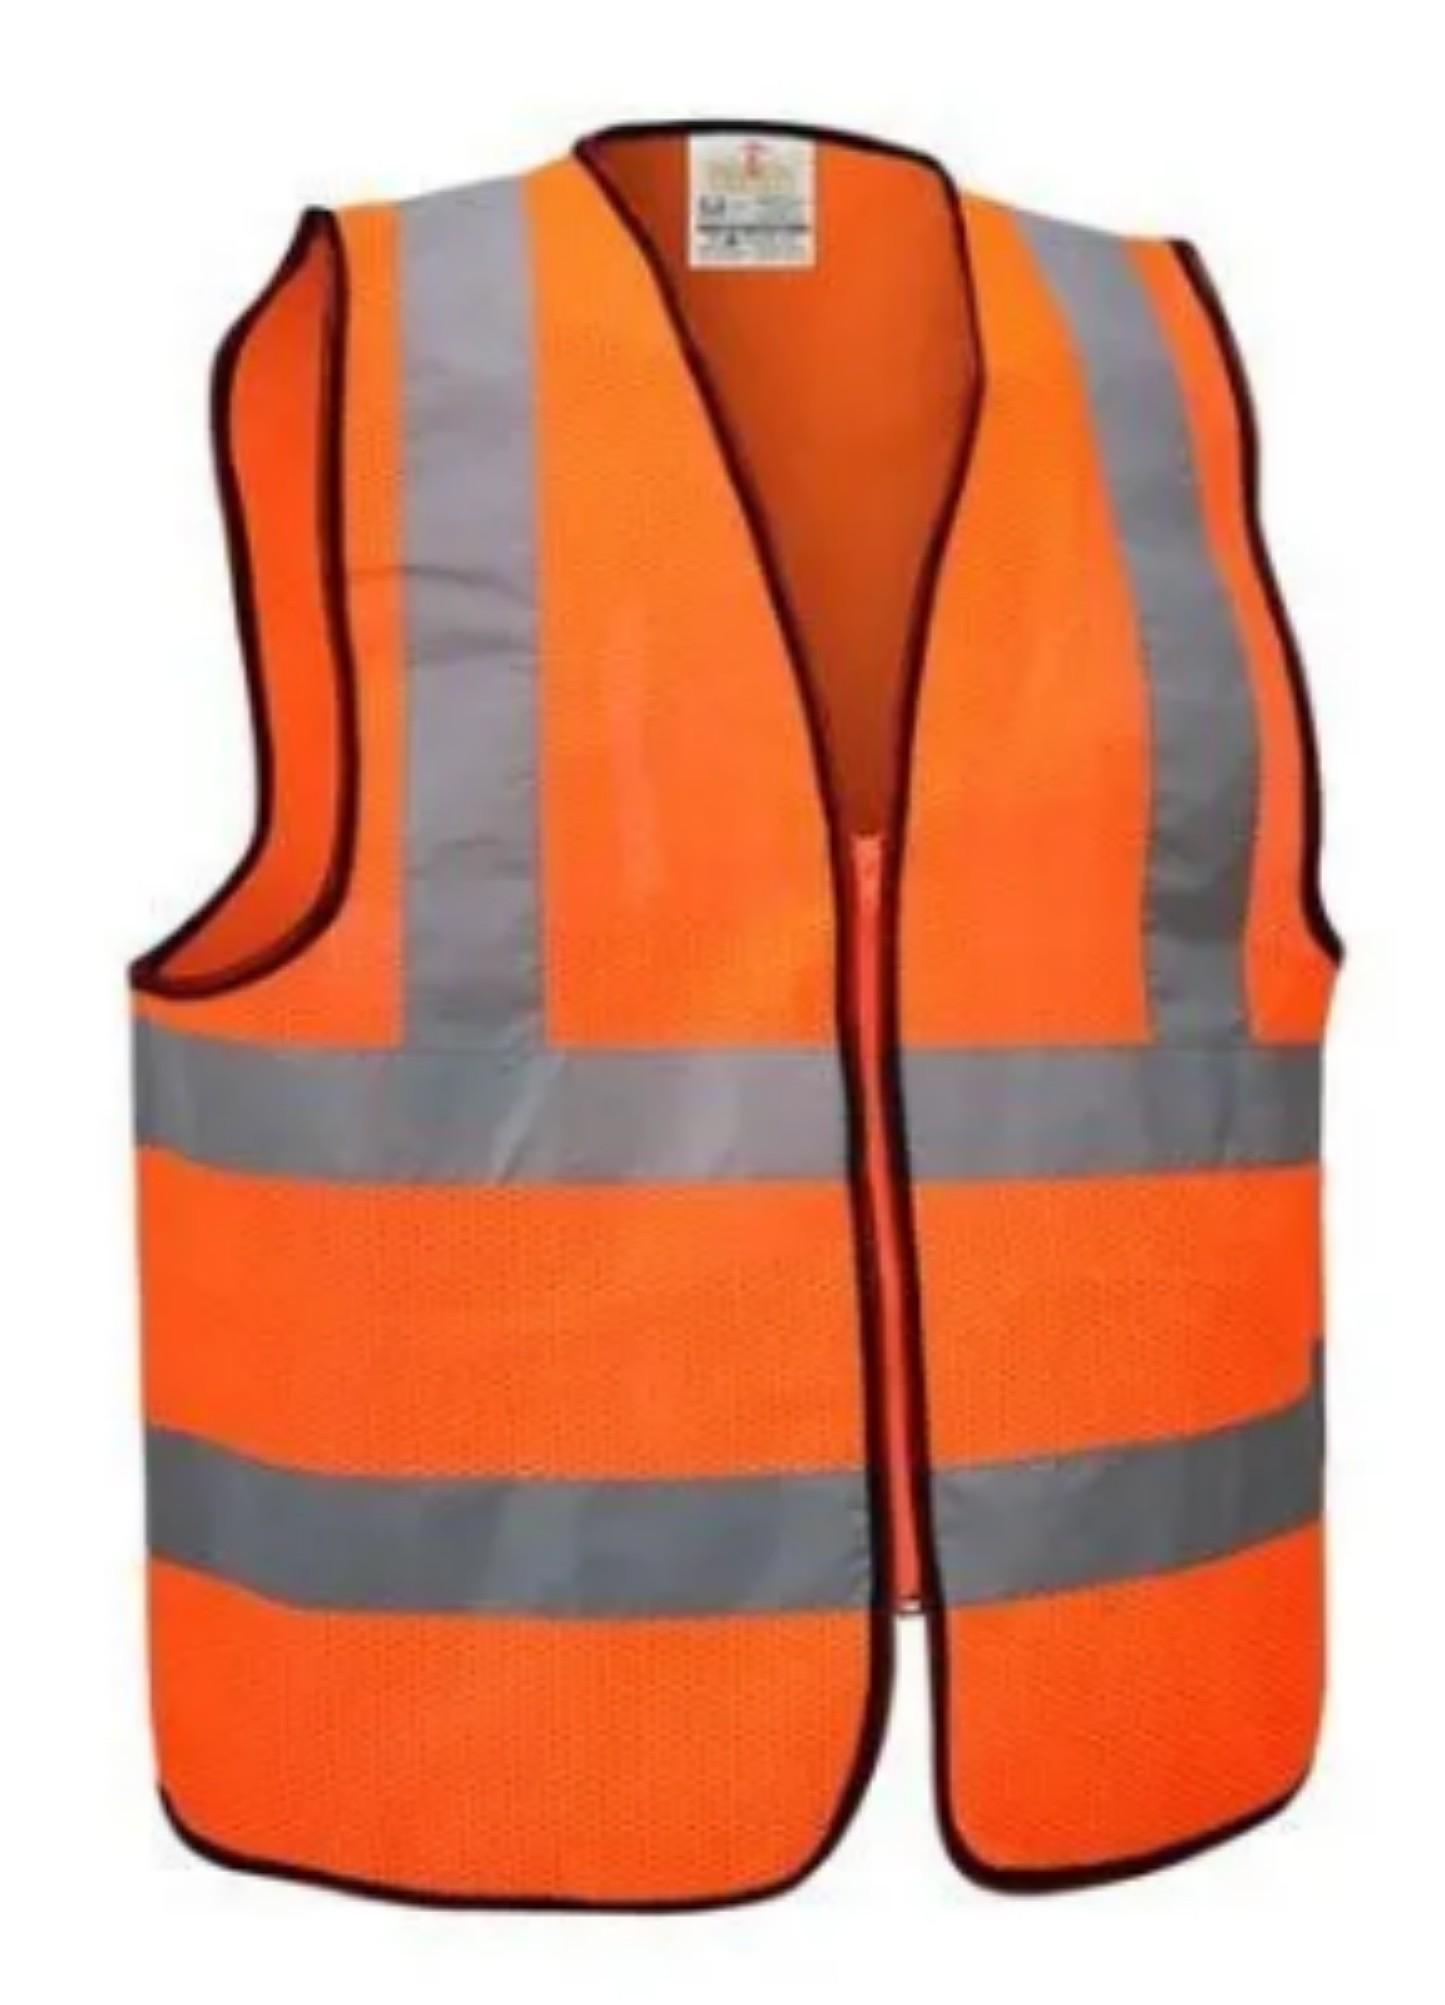 52% OFF on 3M 6160 Safety Jacket(orange/white) on Flipkart | PaisaWapas.com